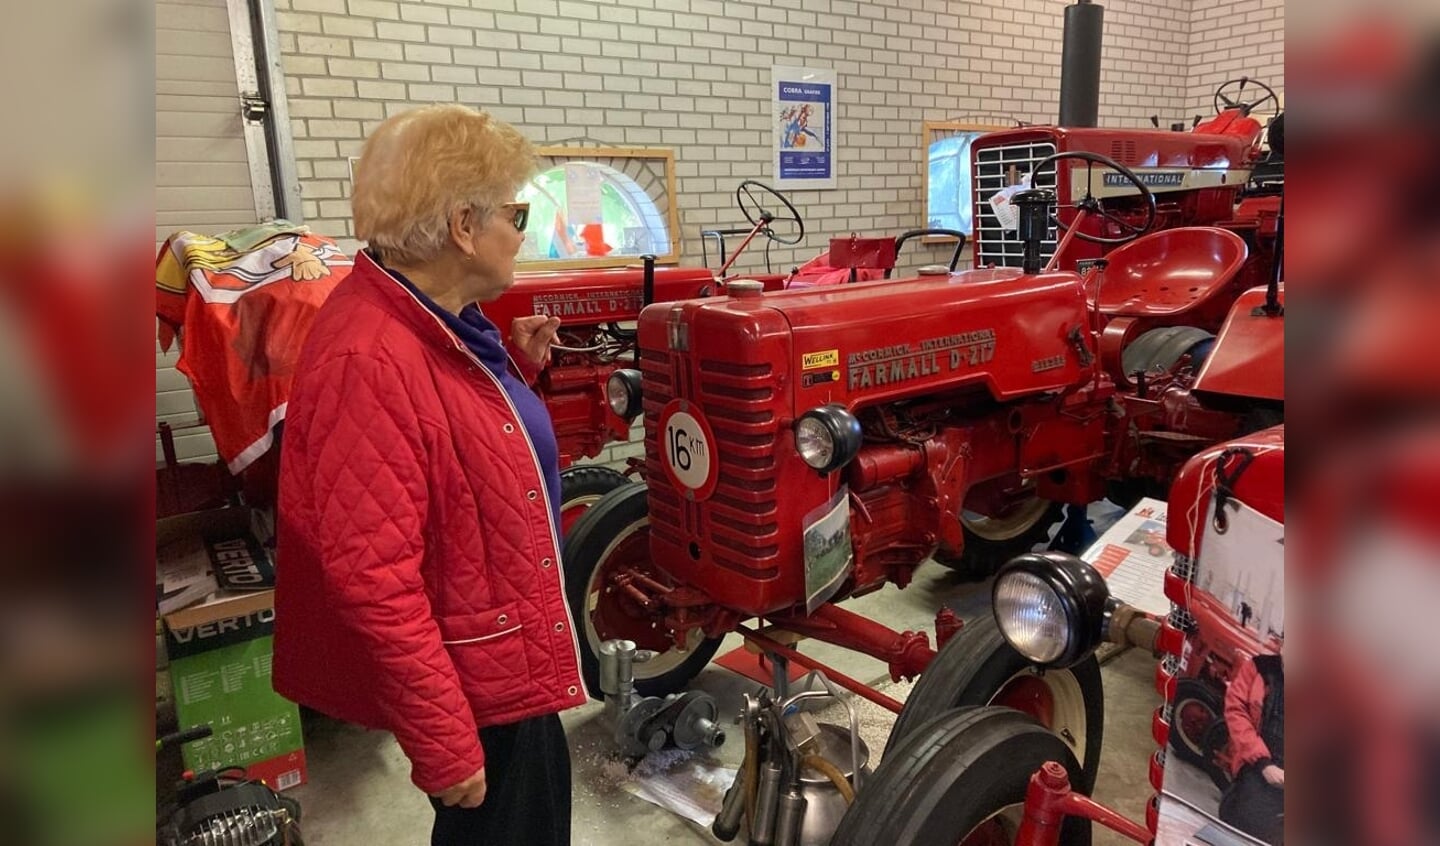  De huidige functie van de stal als tractorenmuseum heeft toegevoegde waarde voor de beleving van de agrarische geschiedenis. 